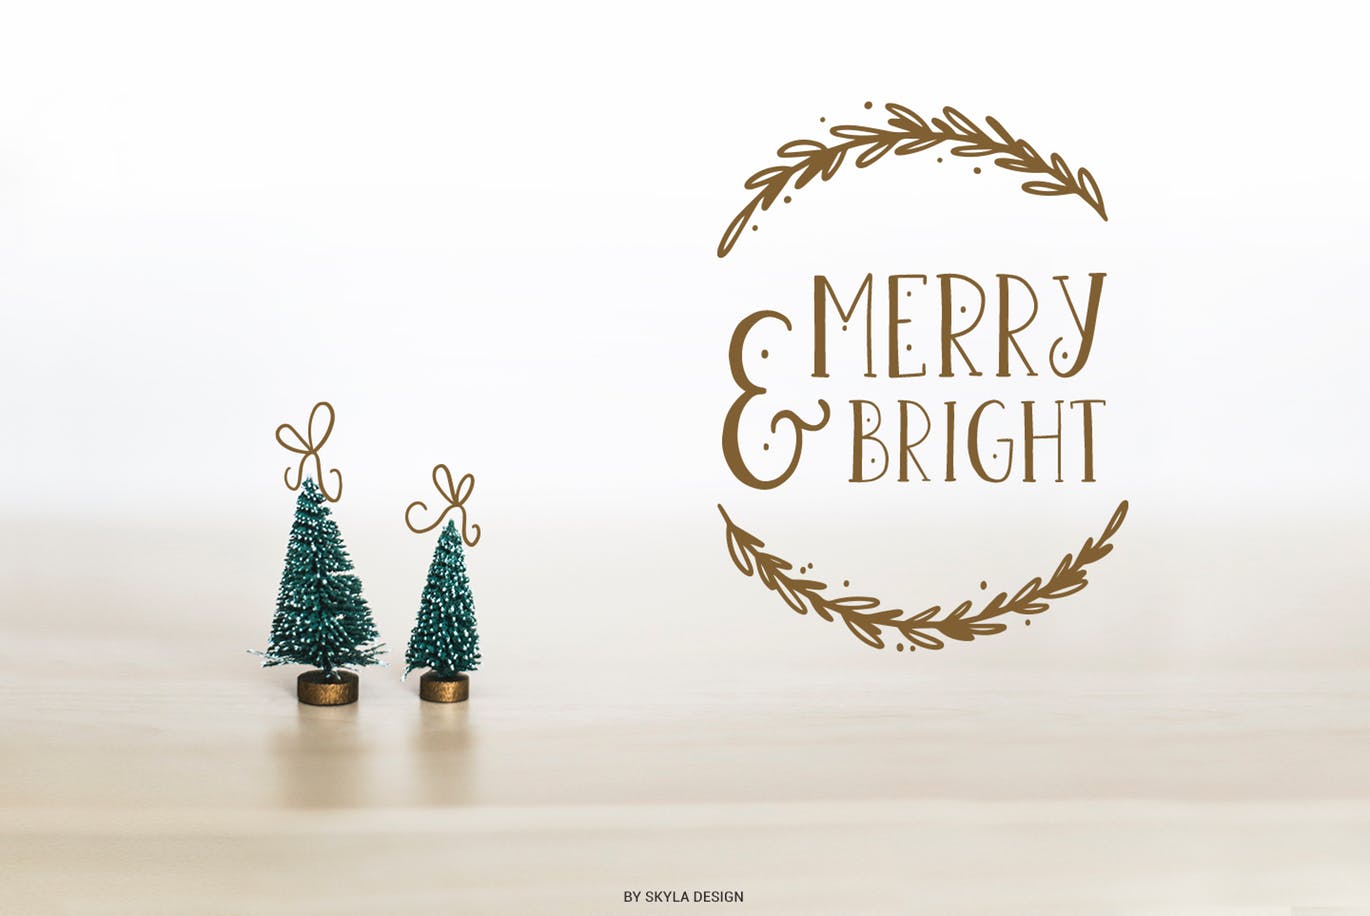 圣诞节主题英文无衬线字体&剪贴画素材 Joyeux Christmas font & clipart插图(6)